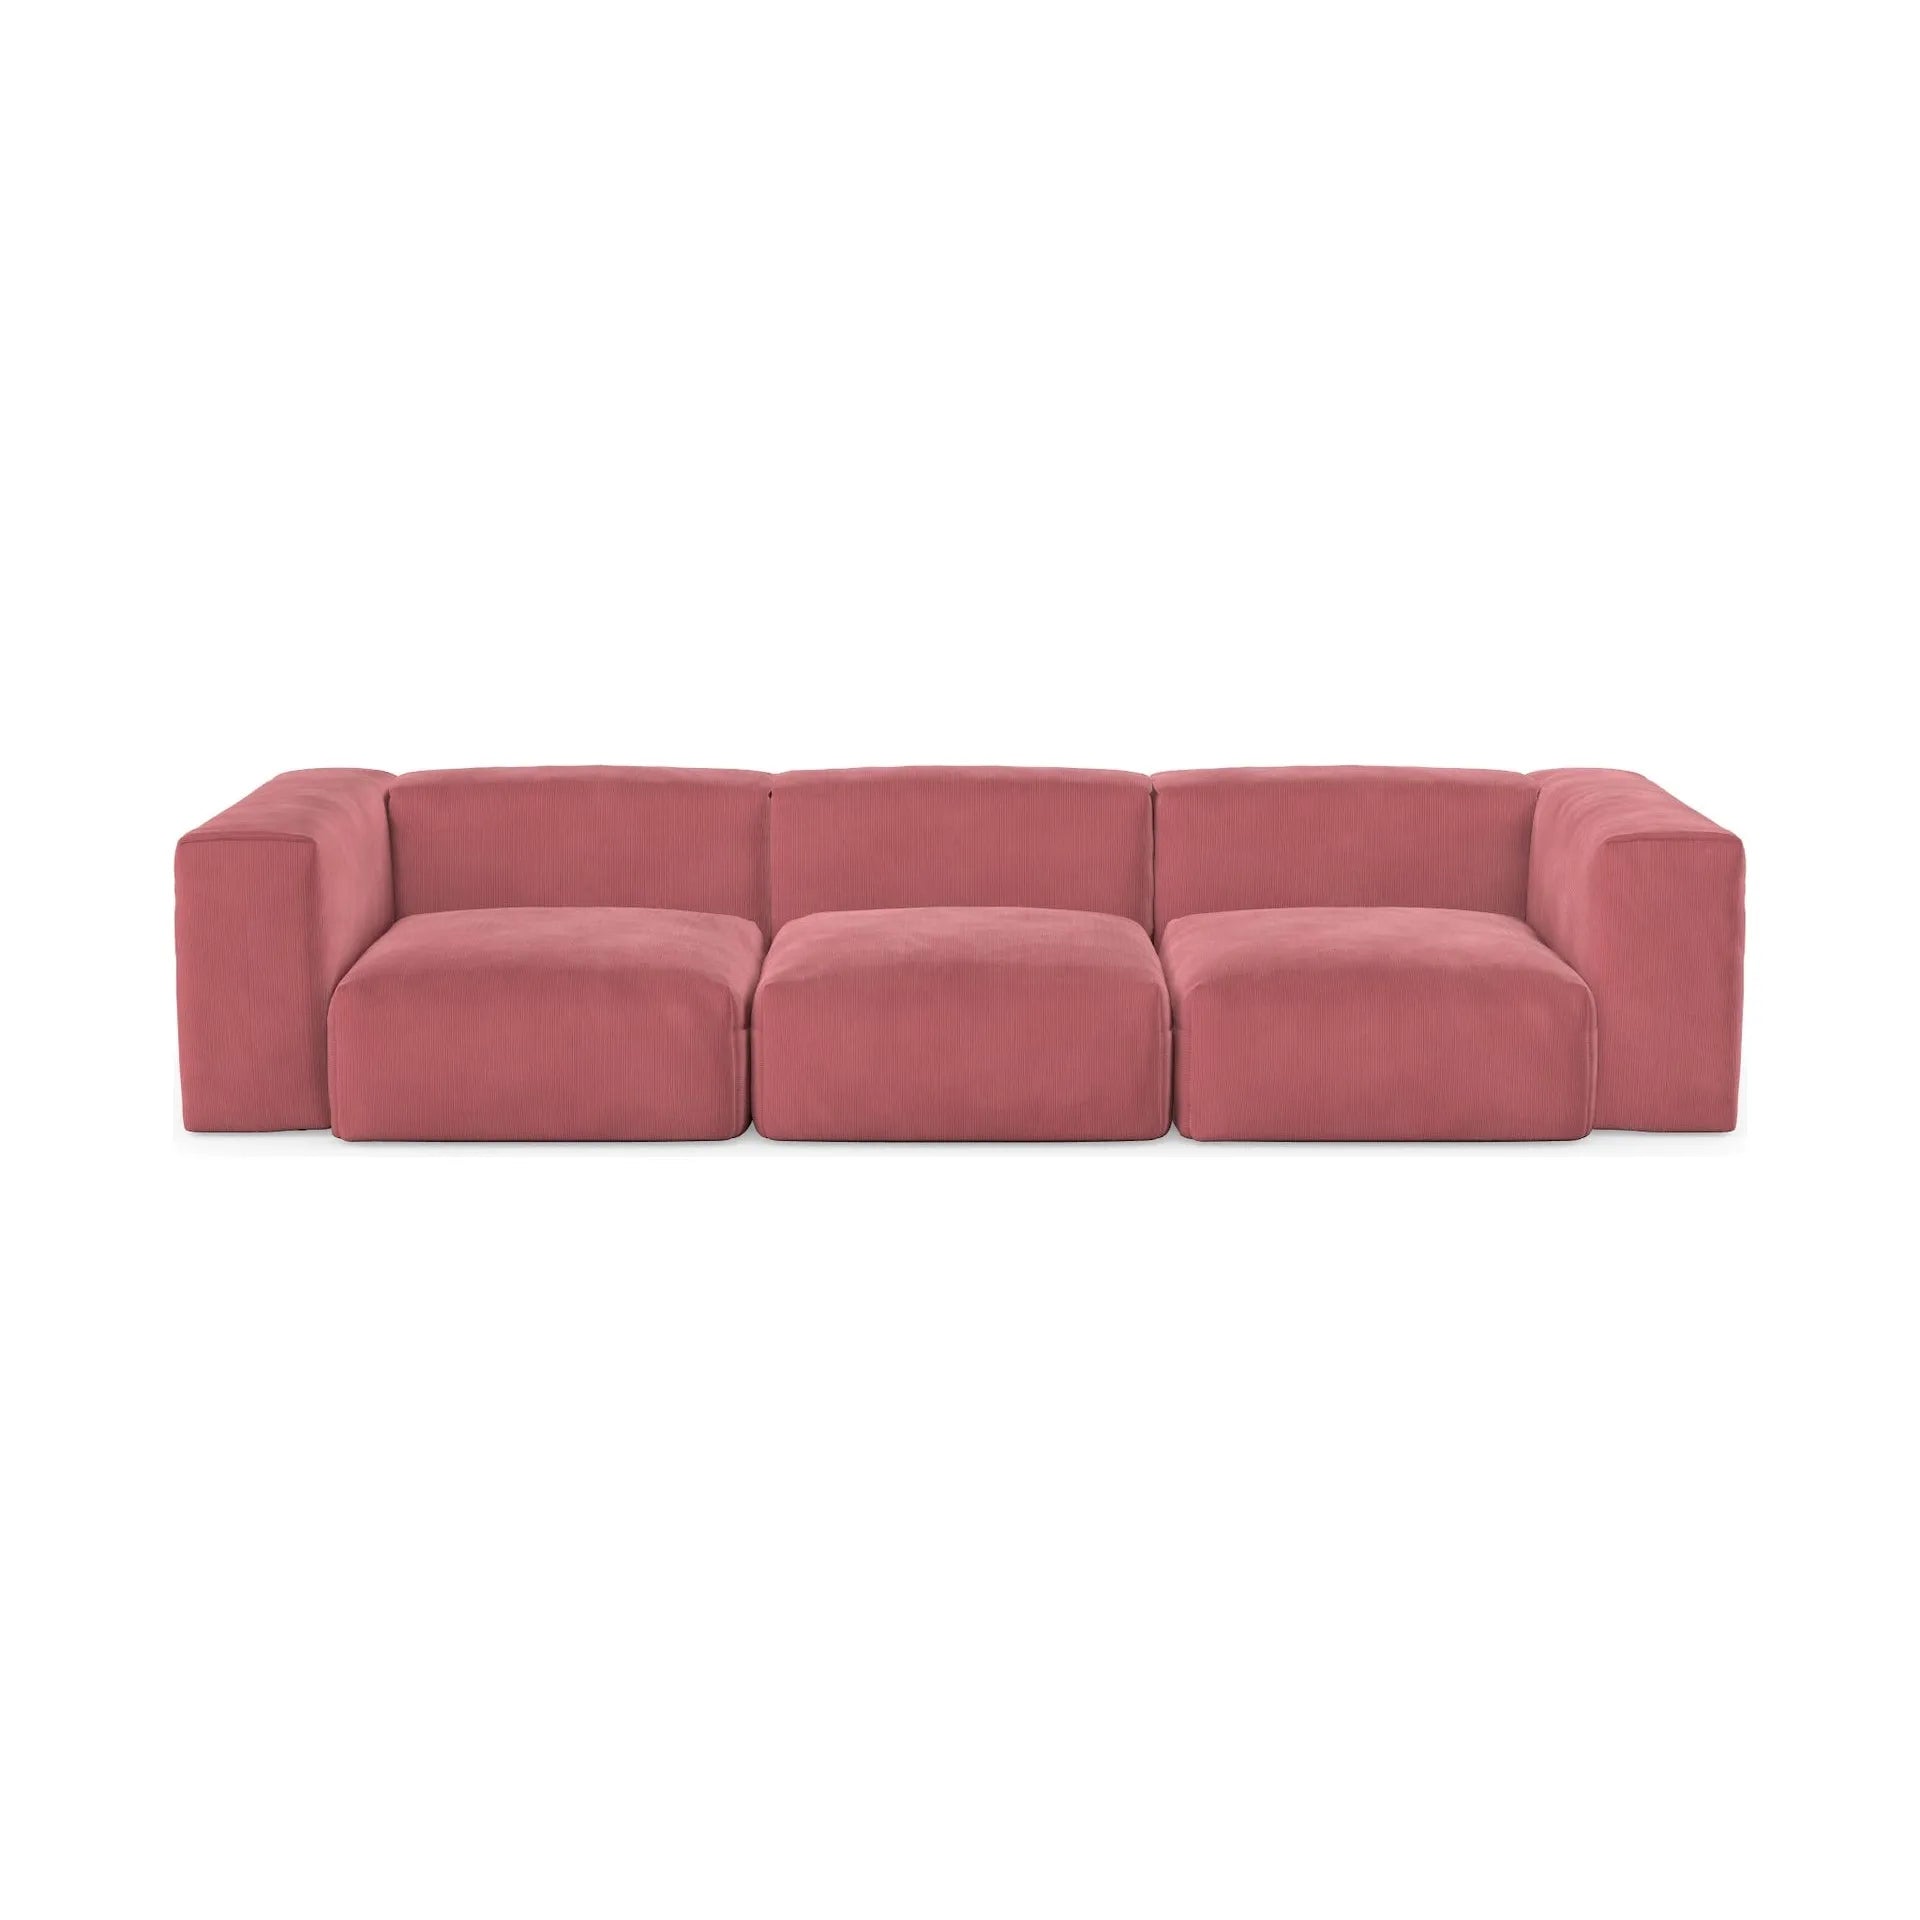 CLOUD XL, 4 vietų modulinė sofa, melsva spalva, velvetas